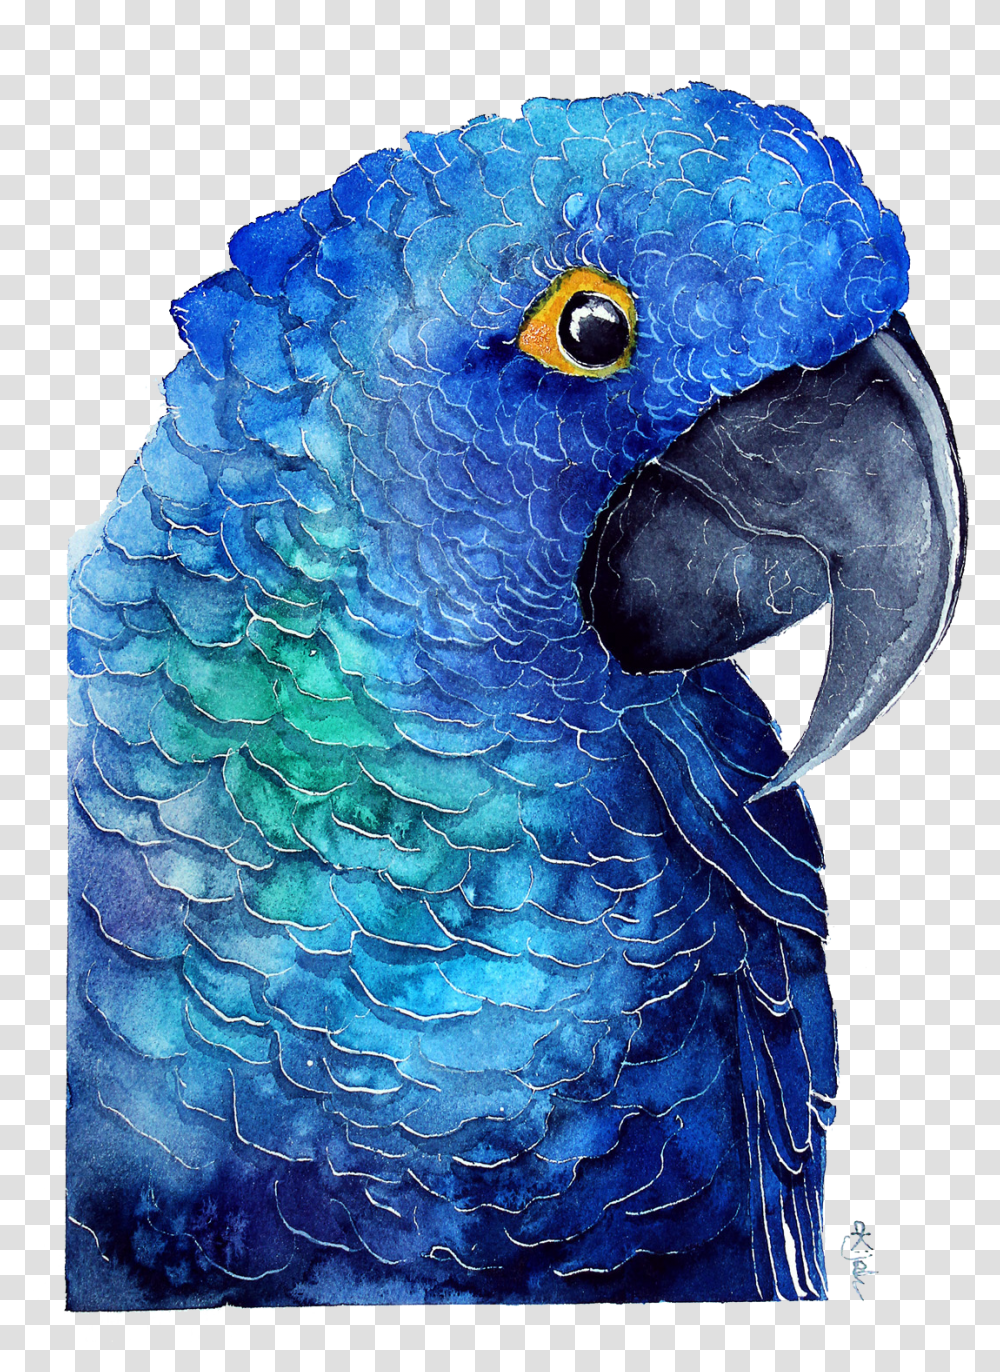 Blue Parrot Download Image Papuga Grafika, Macaw, Bird, Animal, Beak Transparent Png